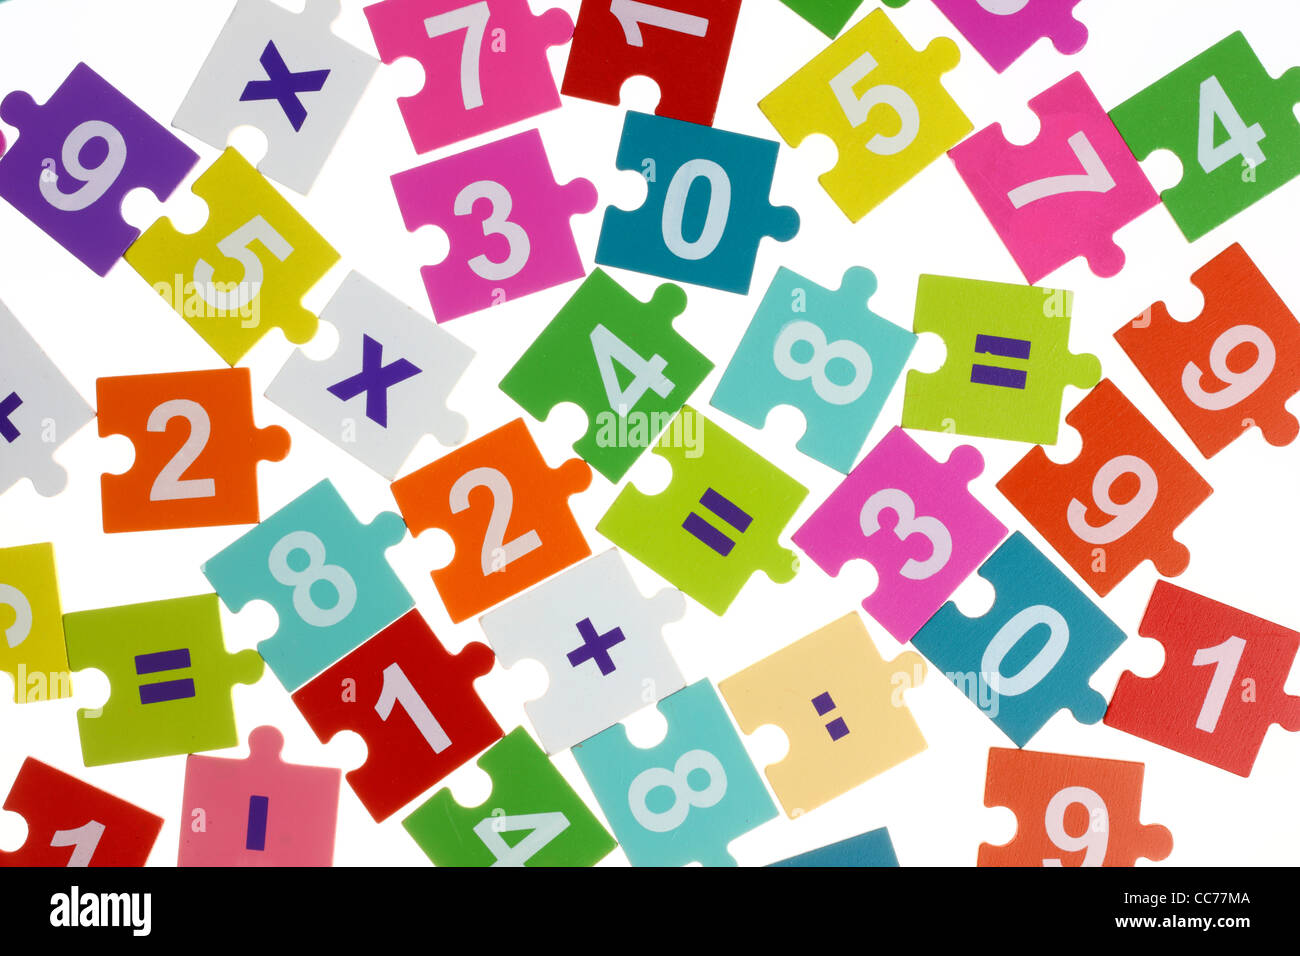 Matematica puzzle, per i bambini. Per imparare la matematica giocando, le operazioni aritmetiche di base. Foto Stock